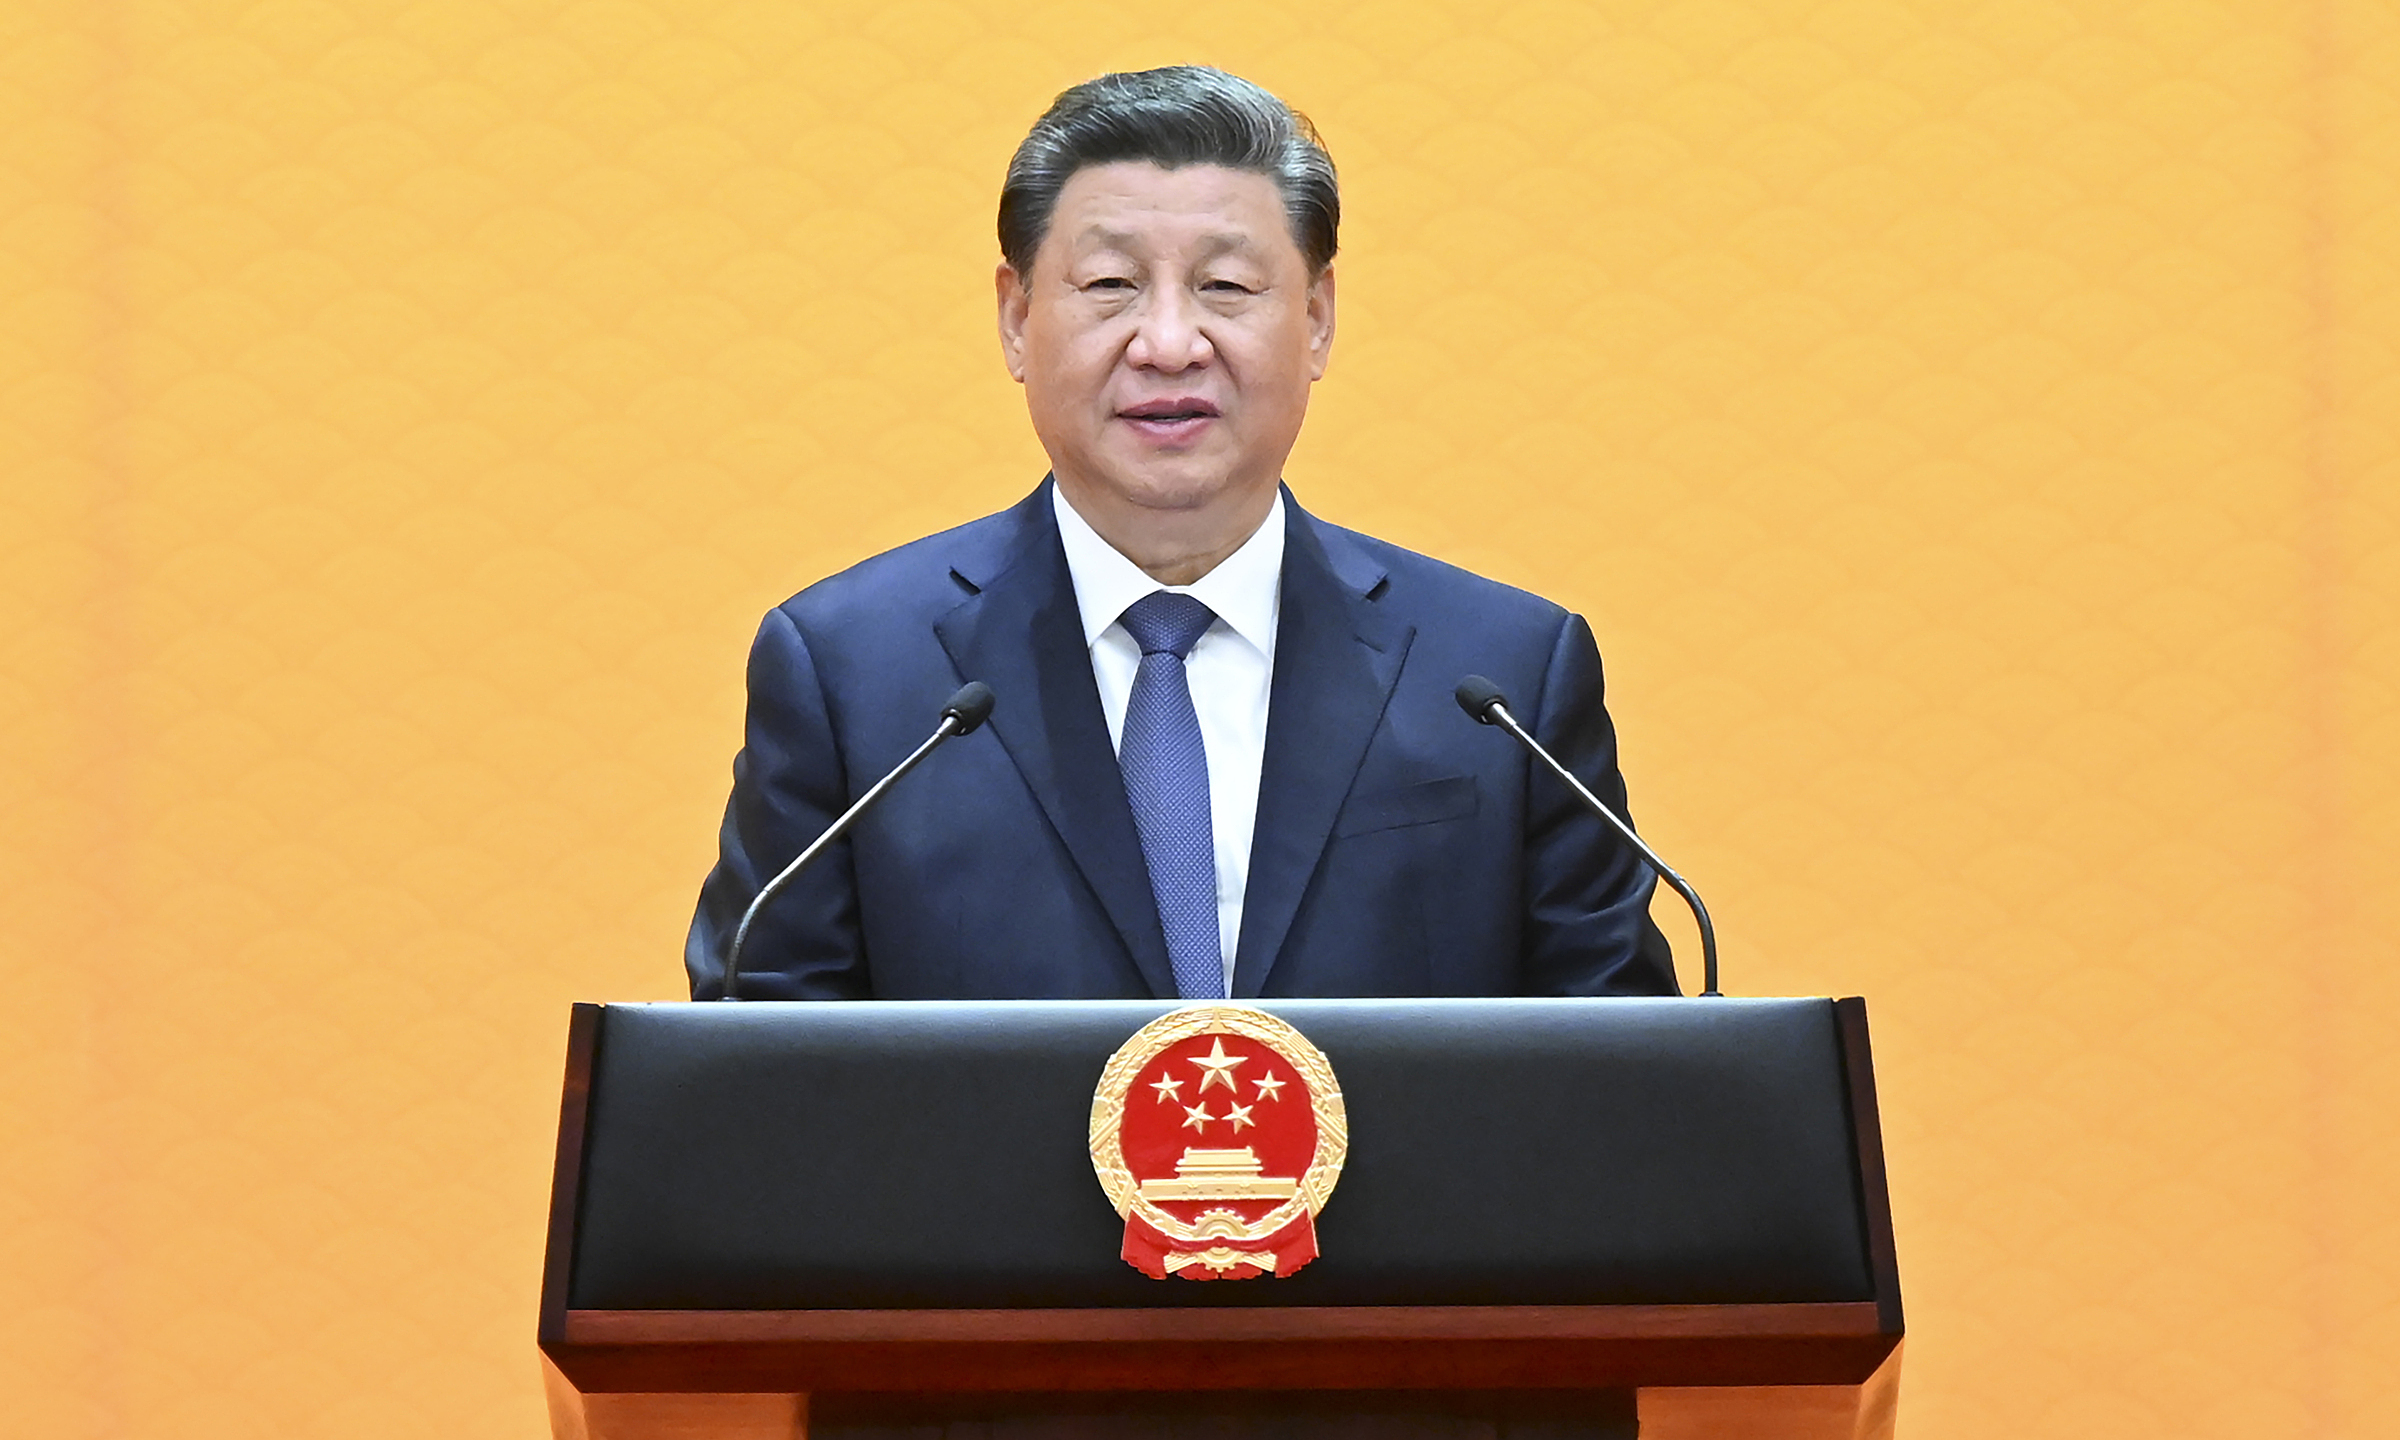 Chủ tịch Trung Quốc Tập Cận Bình phát biểu tại quốc yến dành cho lãnh đạo các nước và tổ chức quốc tế tại Bắc Kinh ngày 5/2. Ảnh: Reuters.